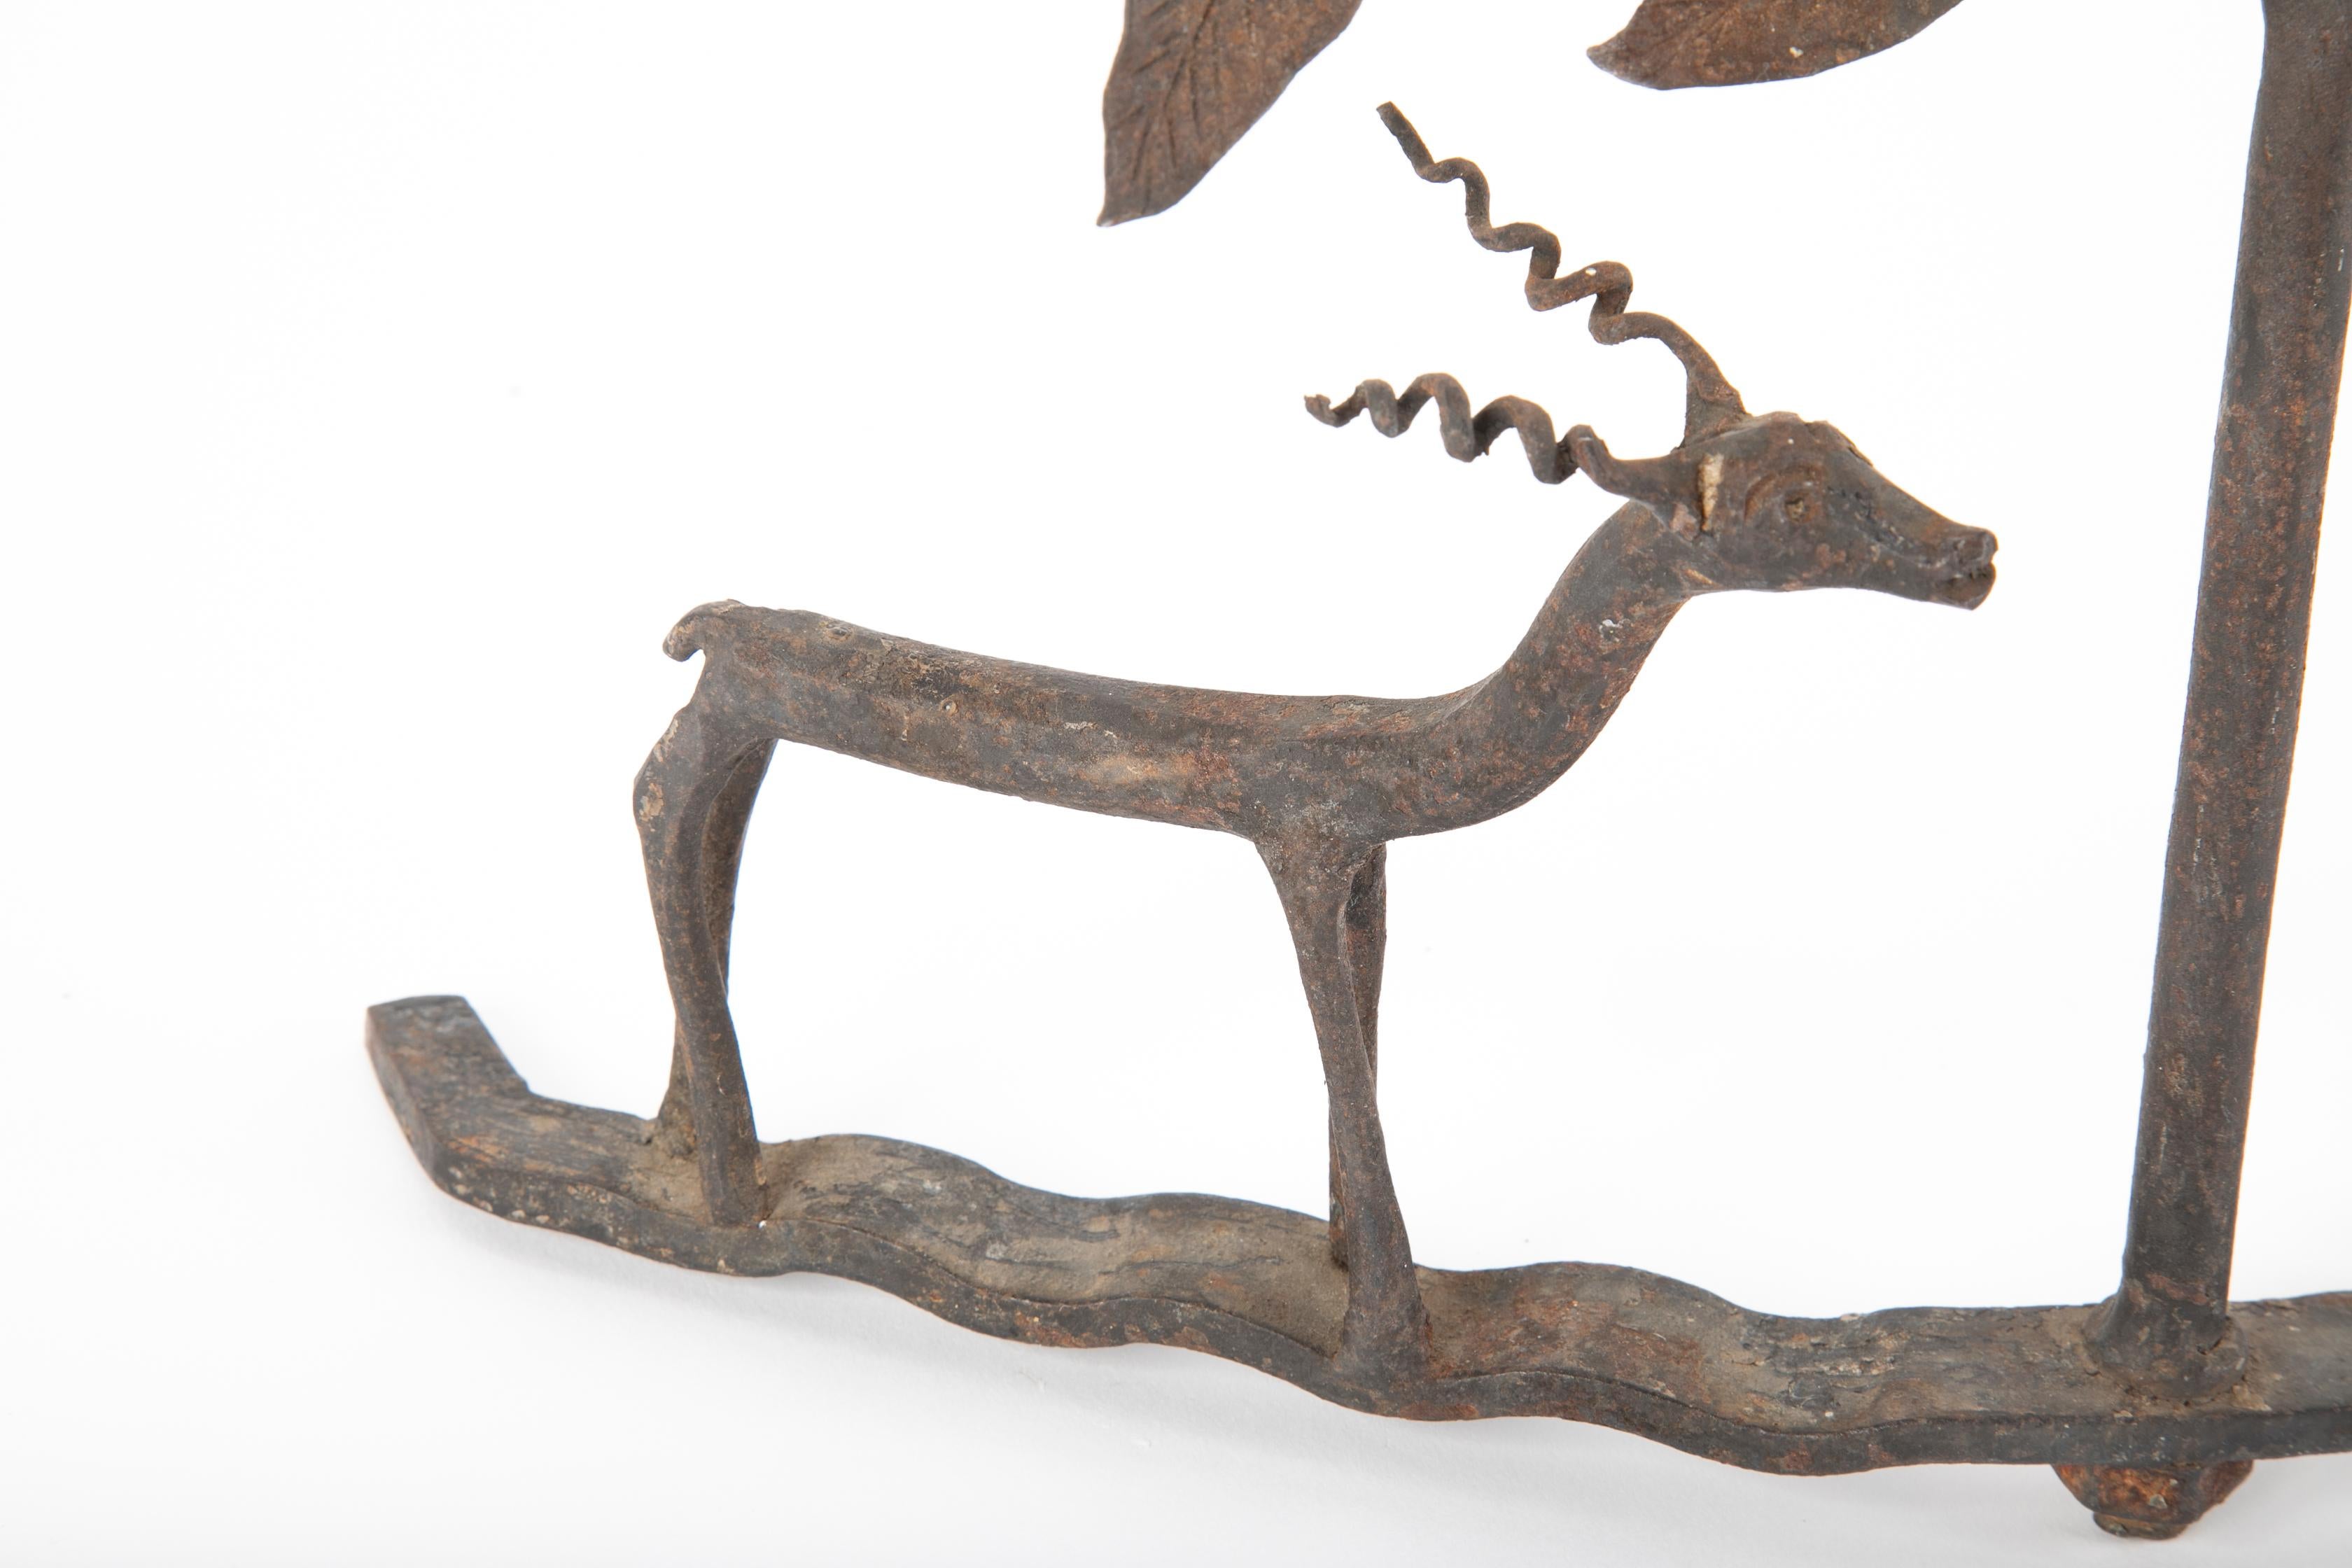 American Folk Art Wrought Iron Candlesticks Depicting Deer 1